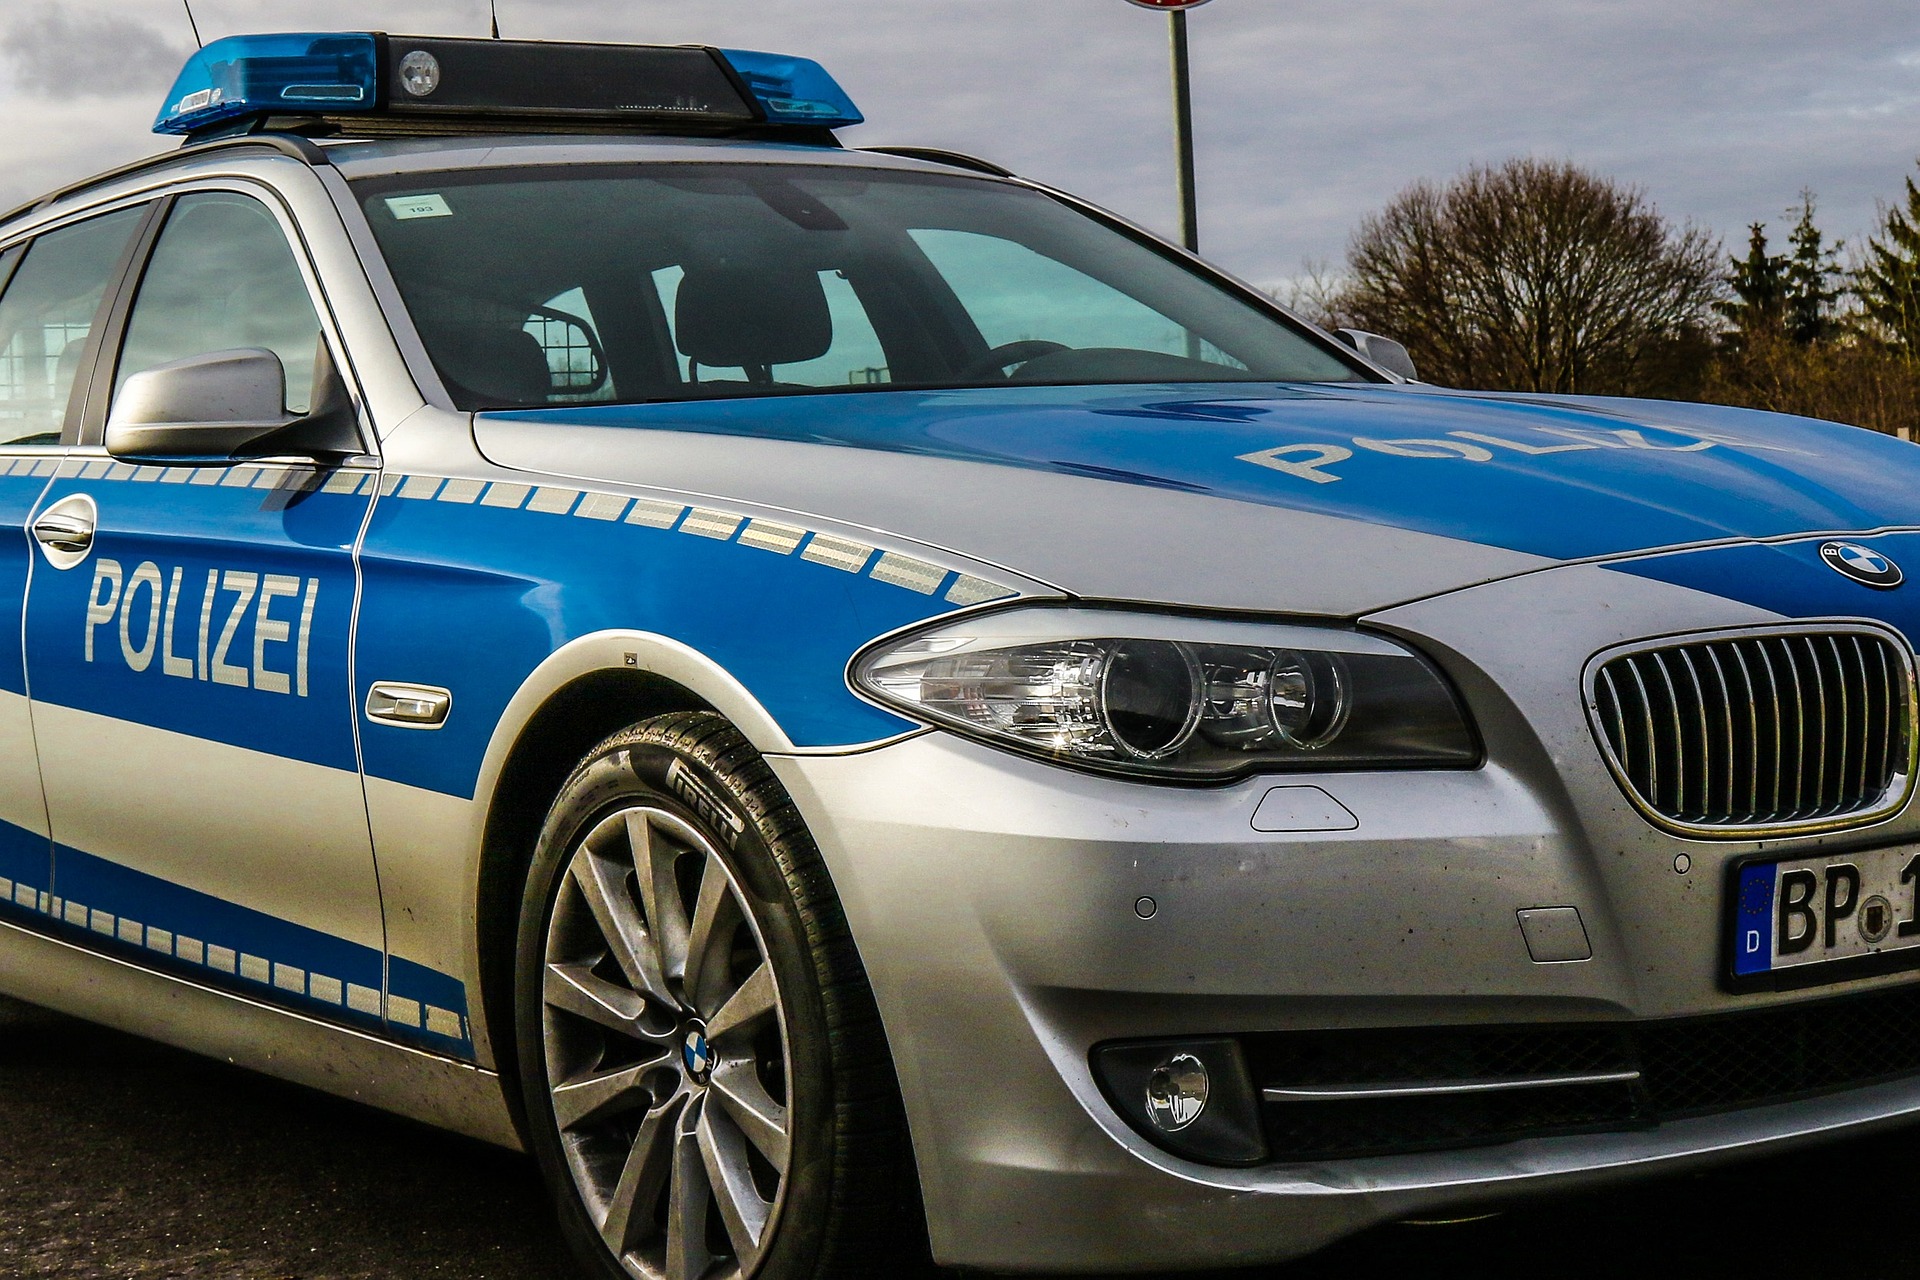 Auto der Bundespolizei - Symbolbild
Bild: 5104831 / Pixabay